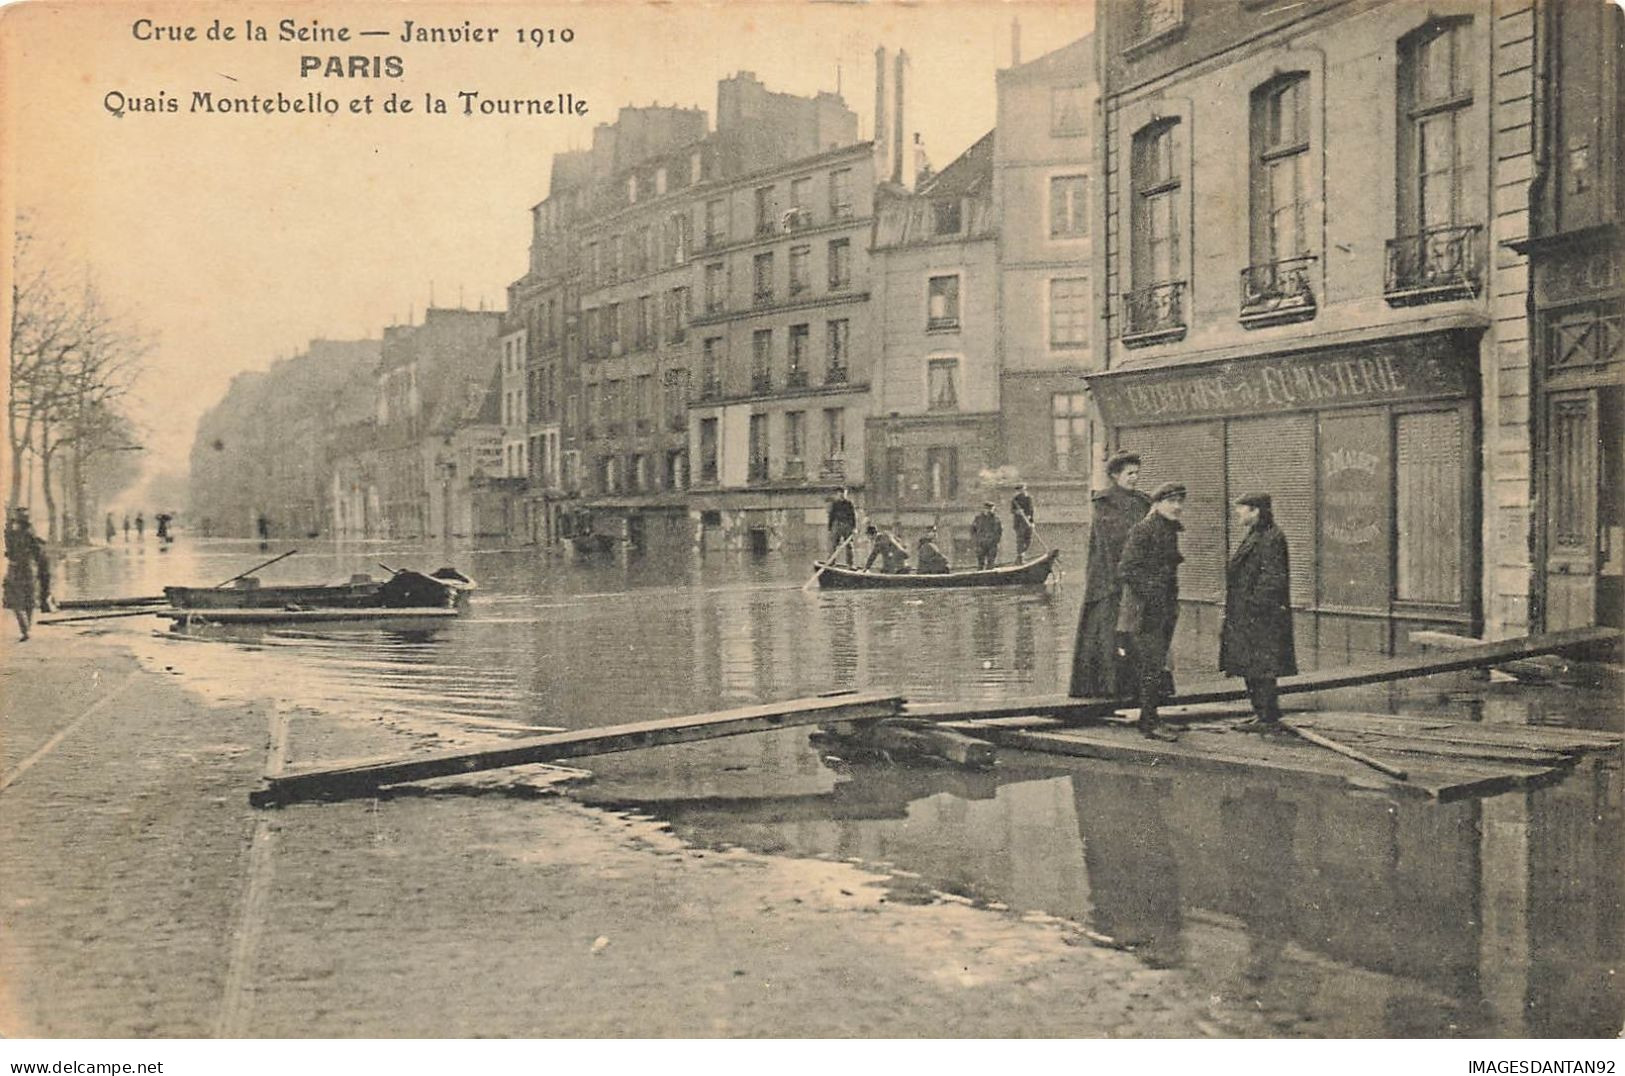 75 PARIS #22791 CRUE DE LA SEINE INONDATIONS 1910 QUAIS MONTEBELLO ET LA TOURNELLE BARQUE CANOT - Inondations De 1910